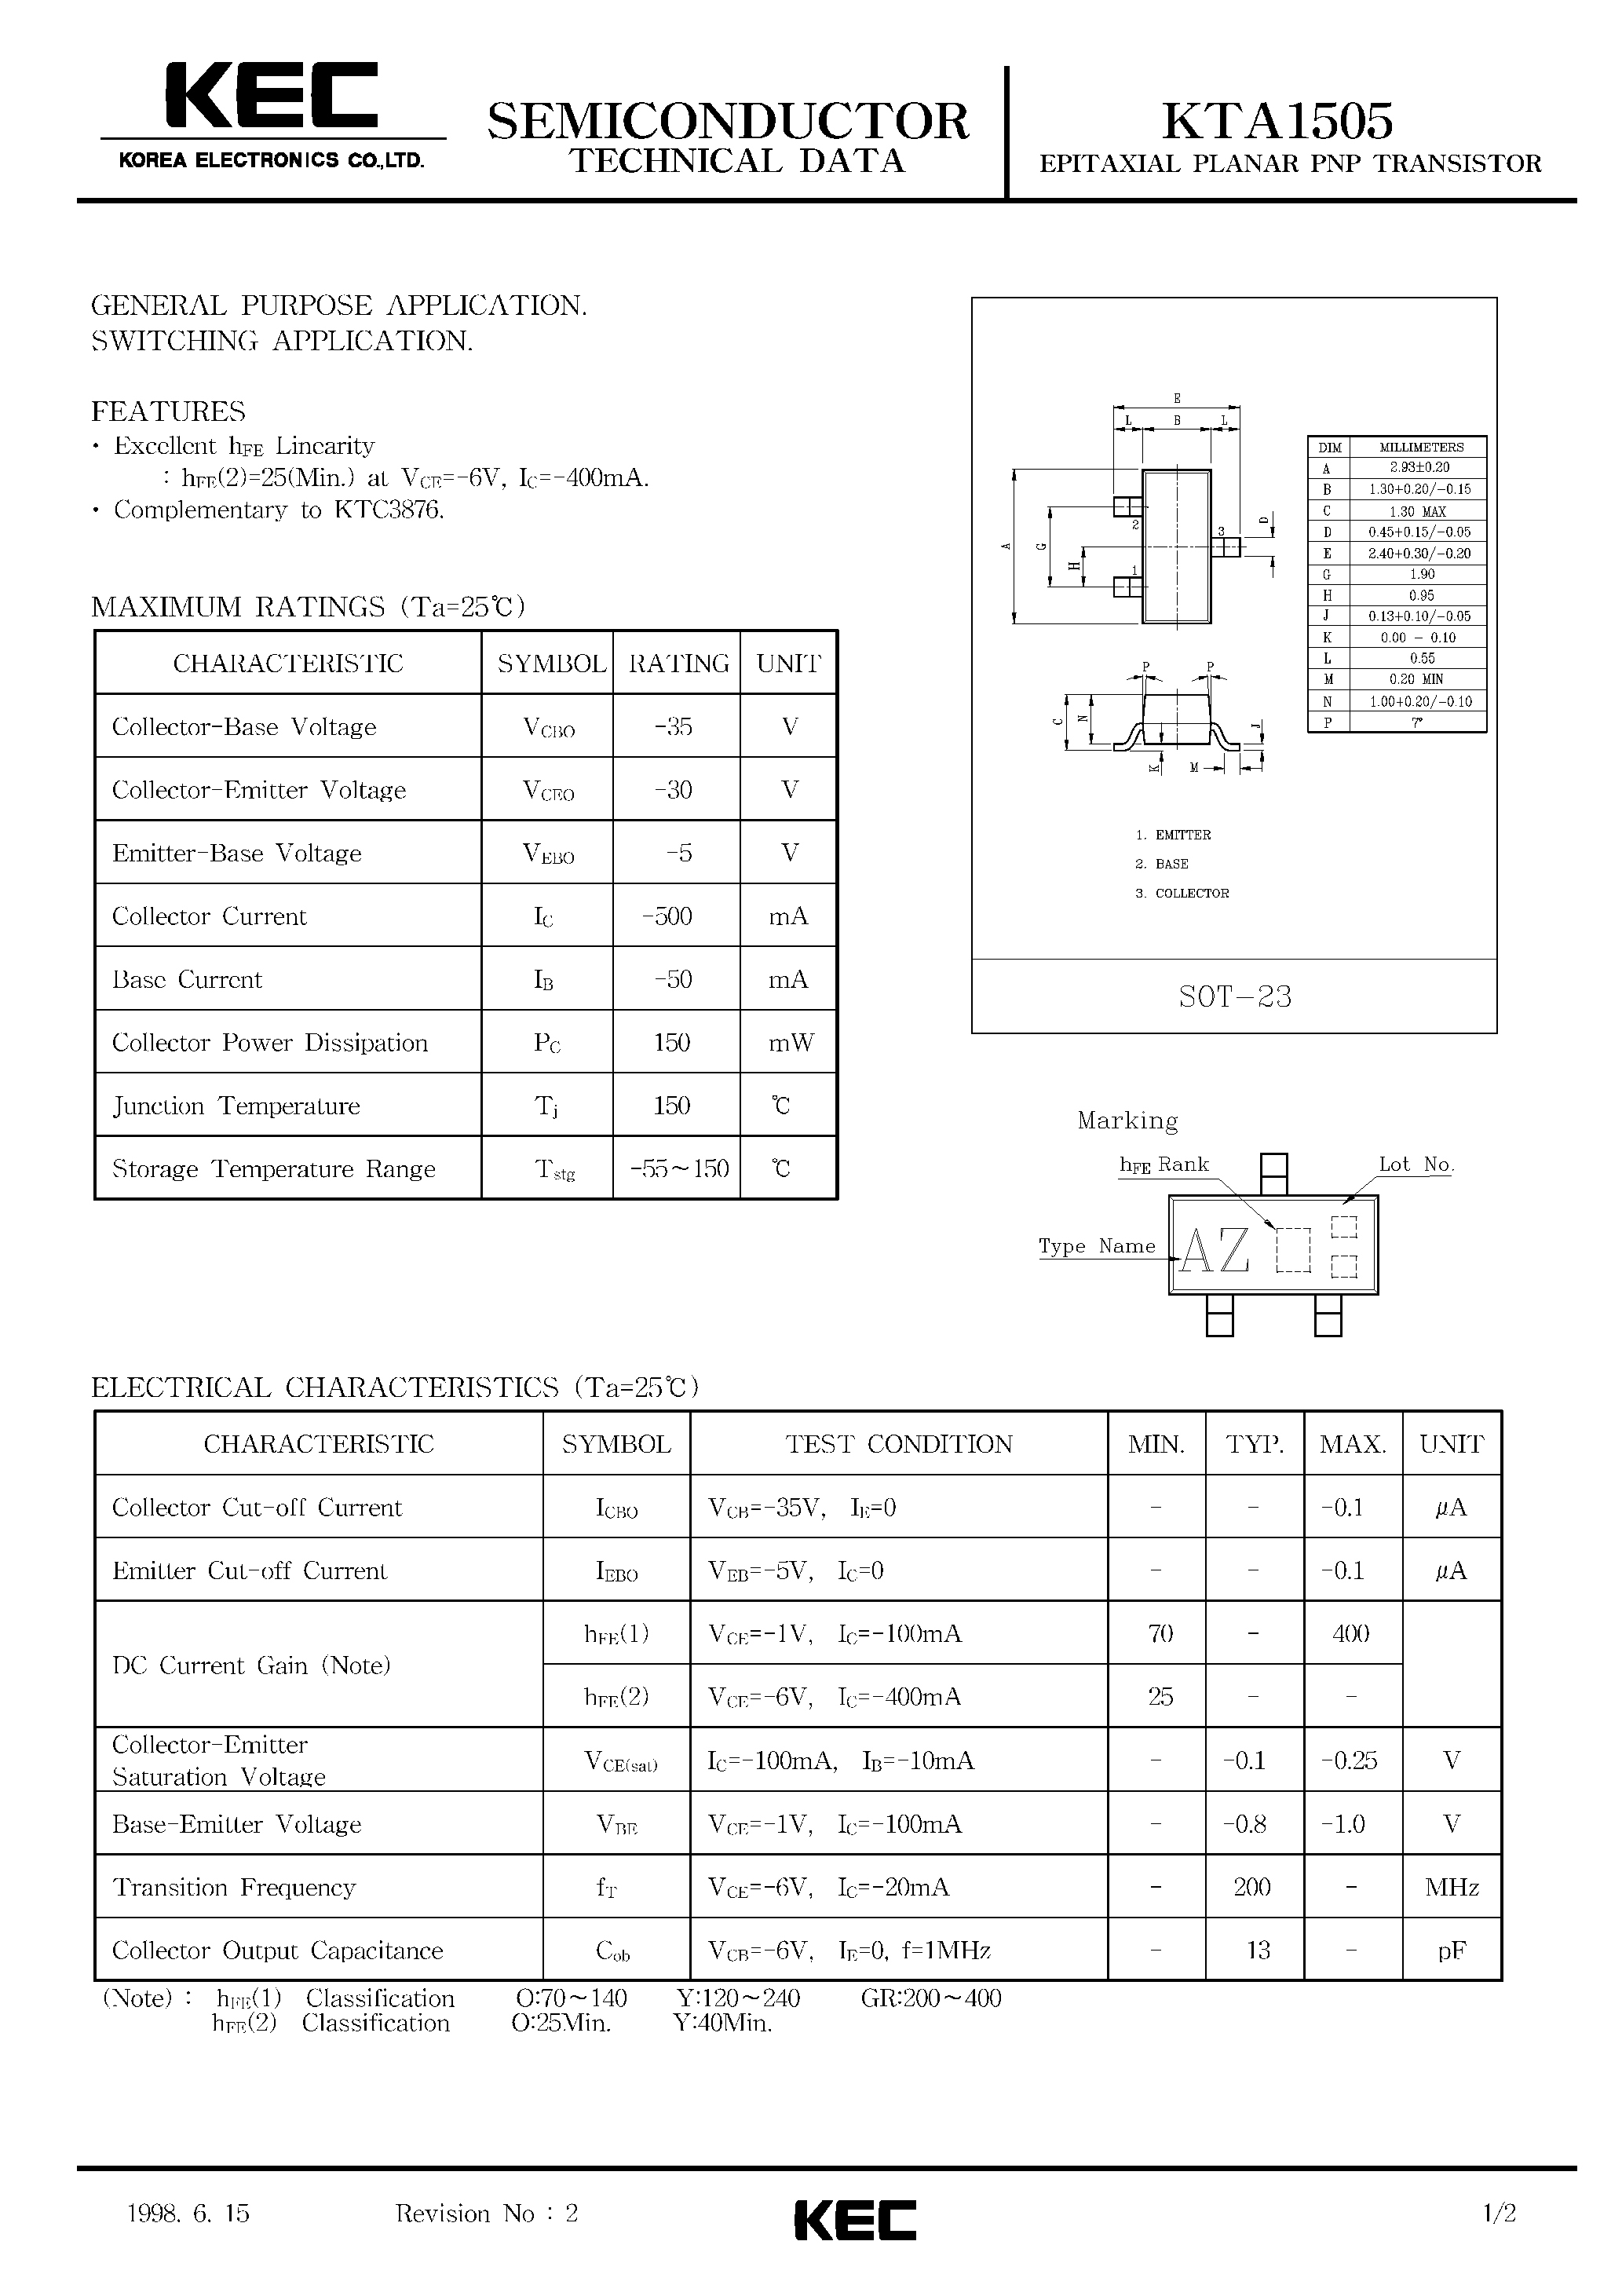 Datasheet KTA1505 - EPITAXIAL PLANAR PNP TRANSISTOR (GENERAL PURPOSE/ SWITCHING) page 1